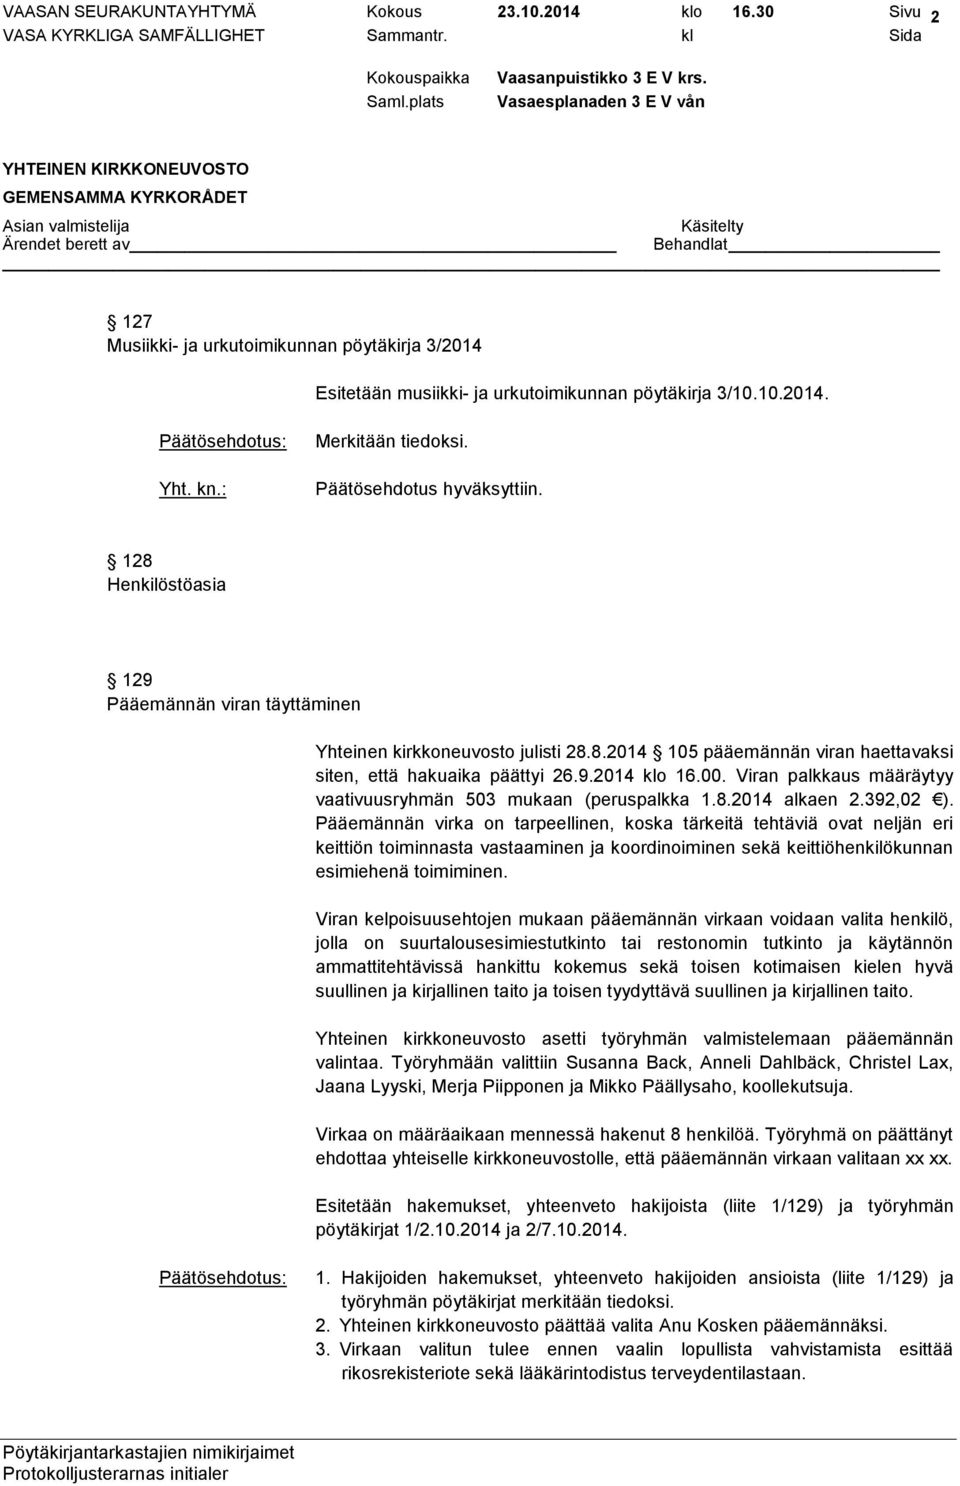 00. Viran palkkaus määräytyy vaativuusryhmän 503 mukaan (peruspalkka 1.8.2014 alkaen 2.392,02 ).